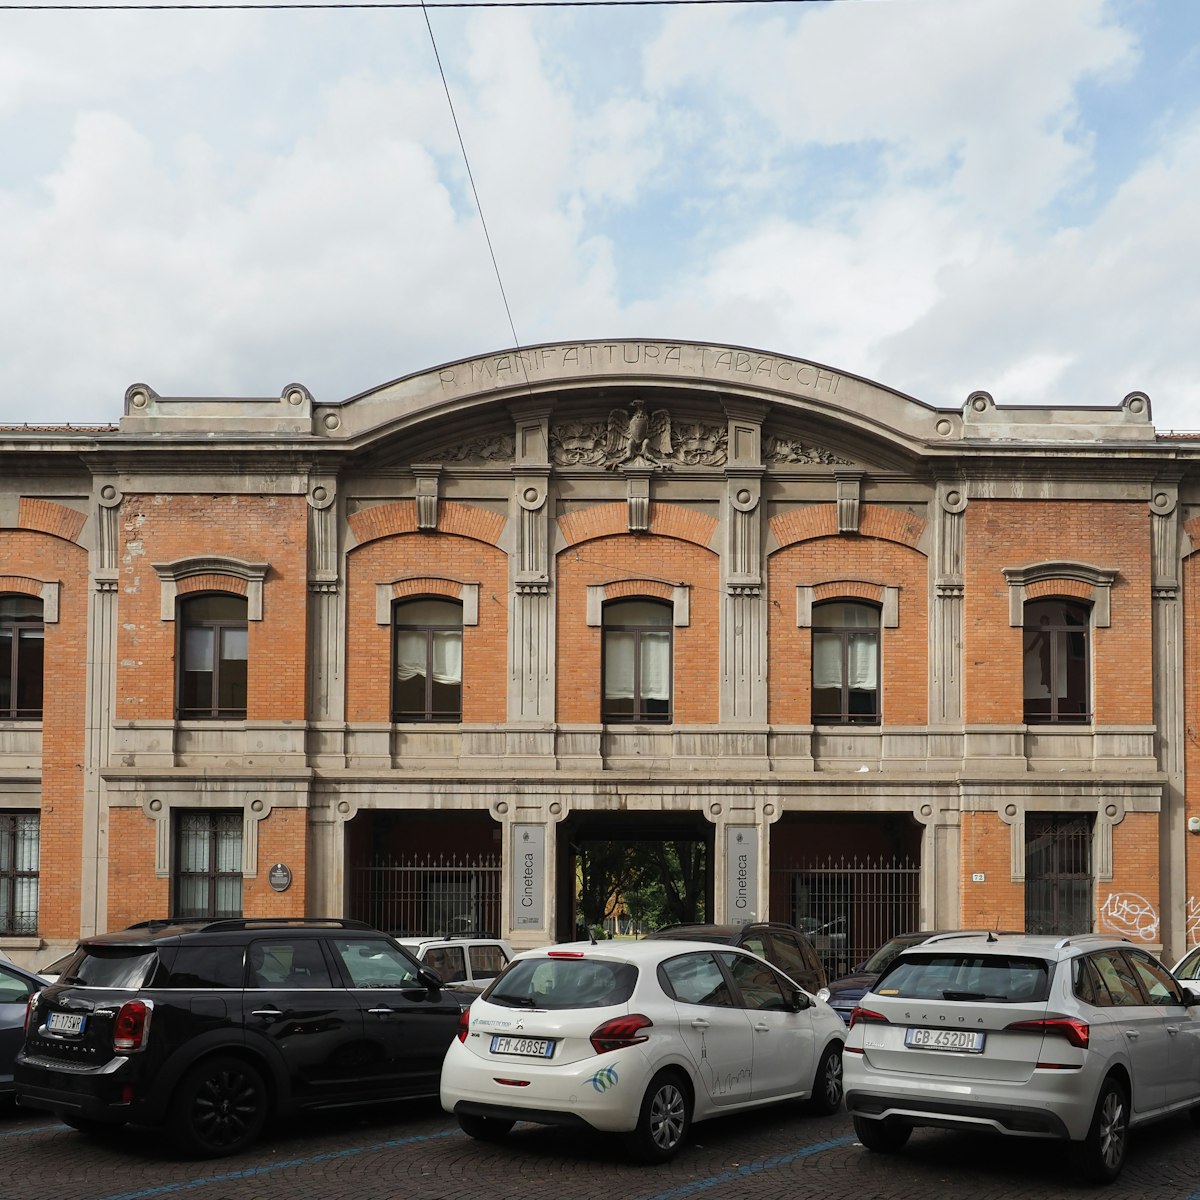 Former Manifattura Tabacchi now Cineteca Bologna in Bologna